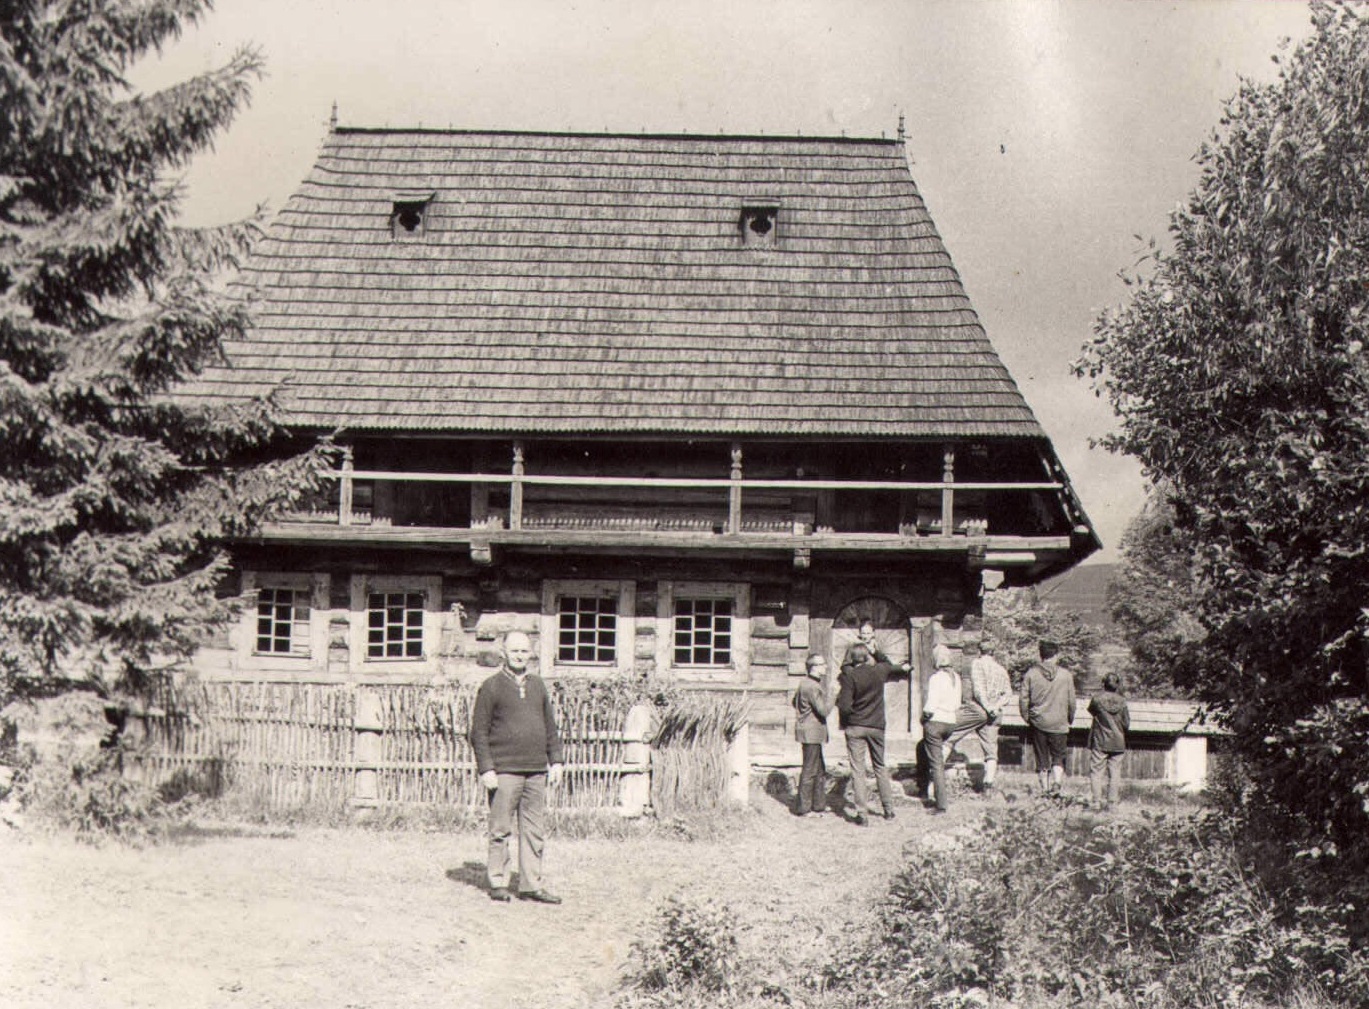 Andrzej Pilch stojący przed zabytkową drewnianą chałupą w skansenie, z nim, po prawej widoczni inni ludzie stojący przed drzwiami do chałupy